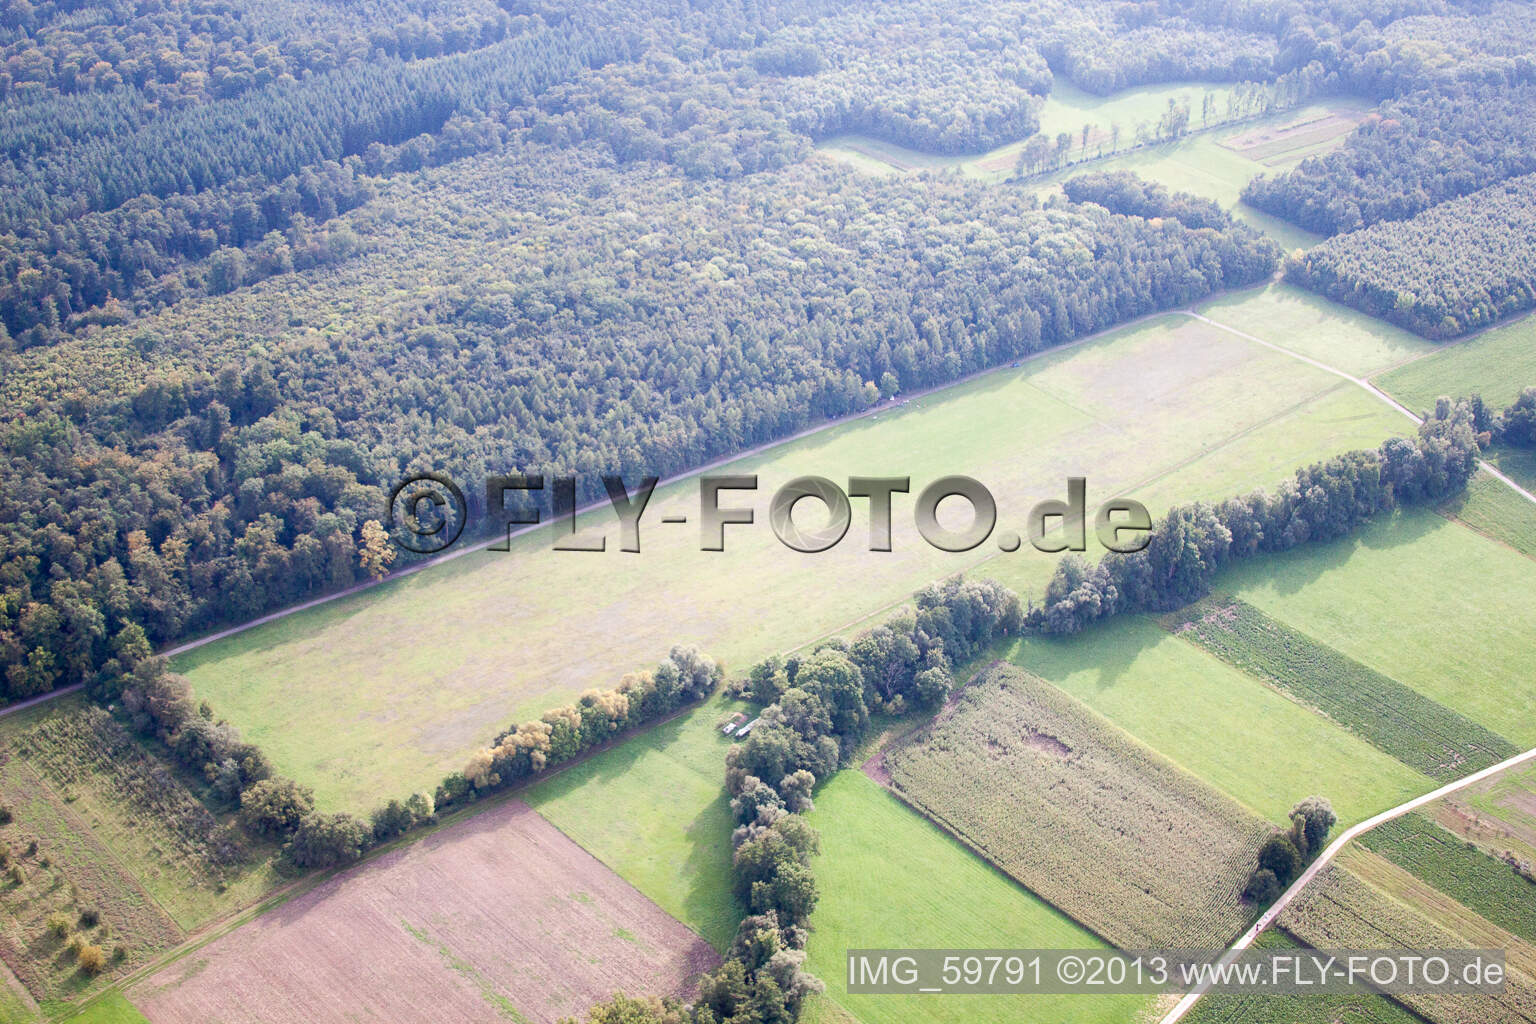 Photographie aérienne de Aérodrome modèle à Rülzheim dans le département Rhénanie-Palatinat, Allemagne